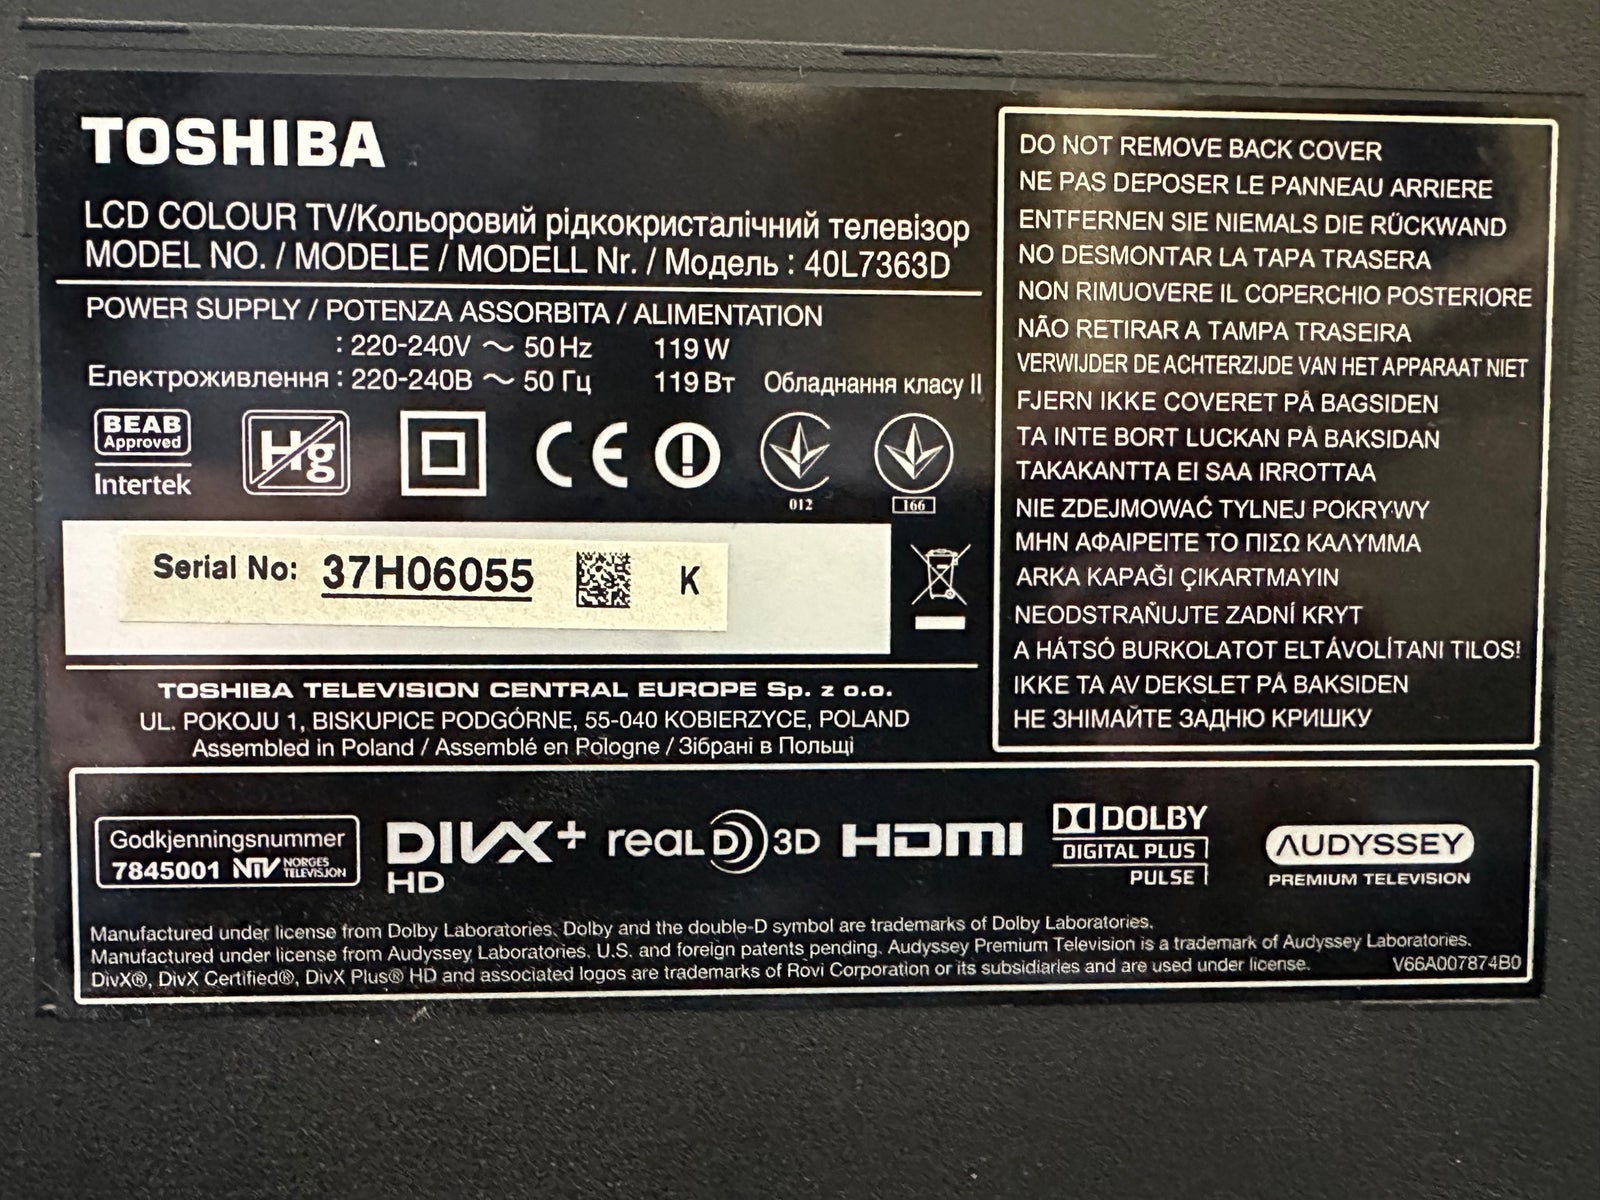 LED, Toshiba, 40L7363DG